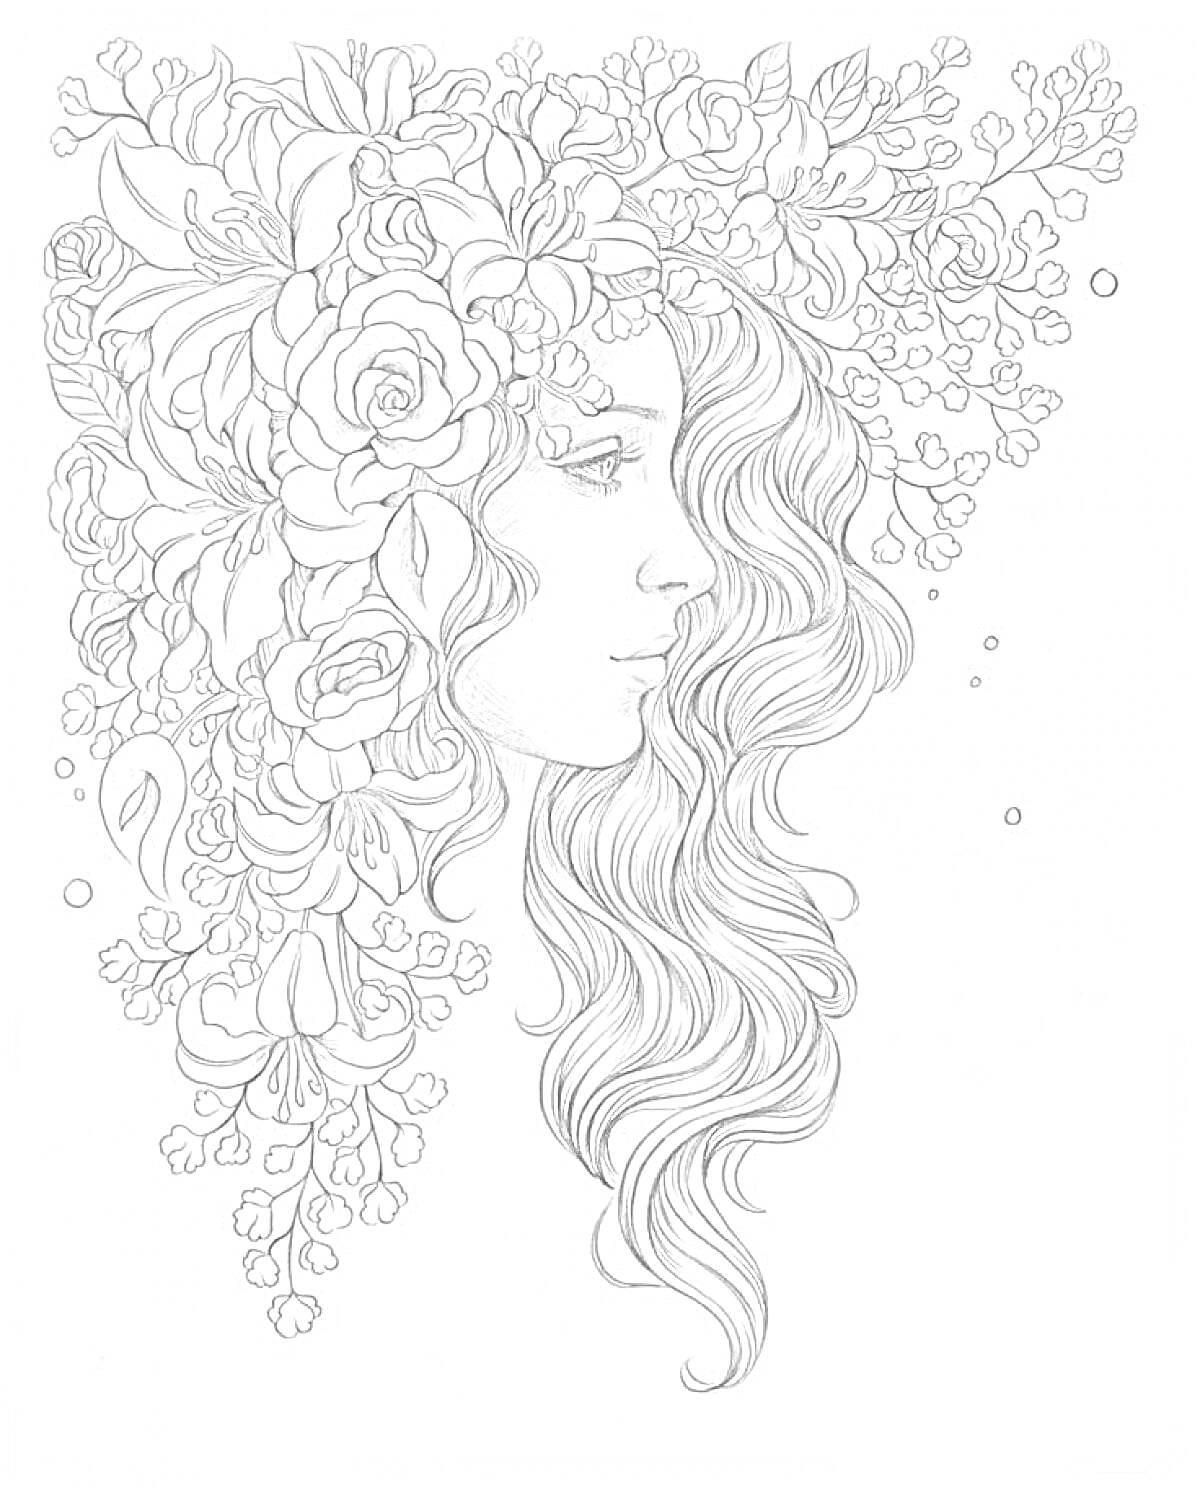 Раскраска Портрет девушки с длинными волнистыми волосами, украшенными большими и маленькими цветами